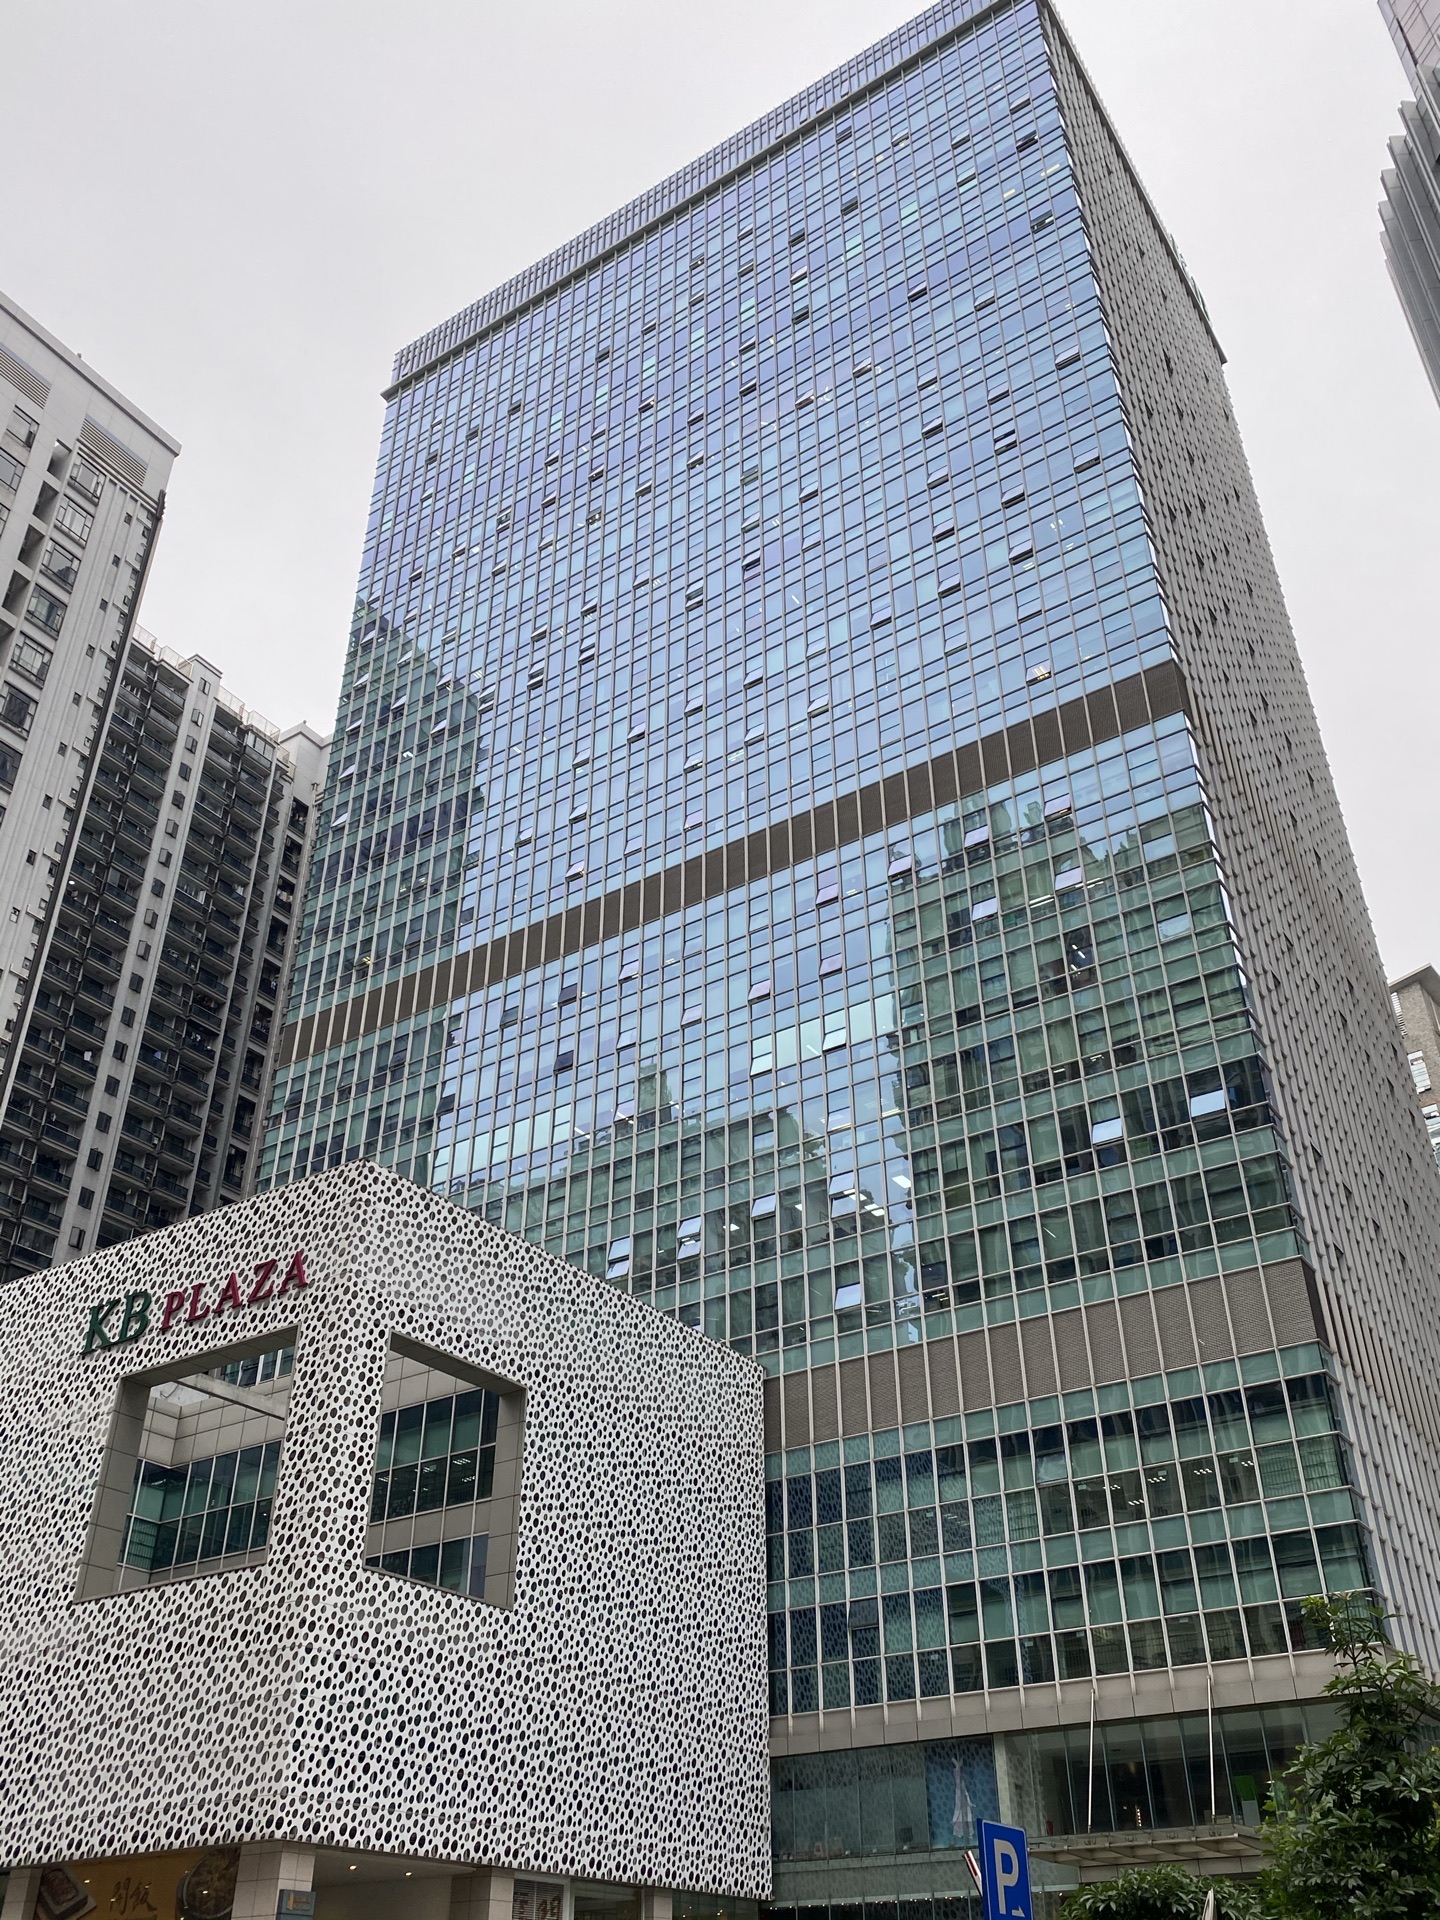 上海建滔商业广场图片